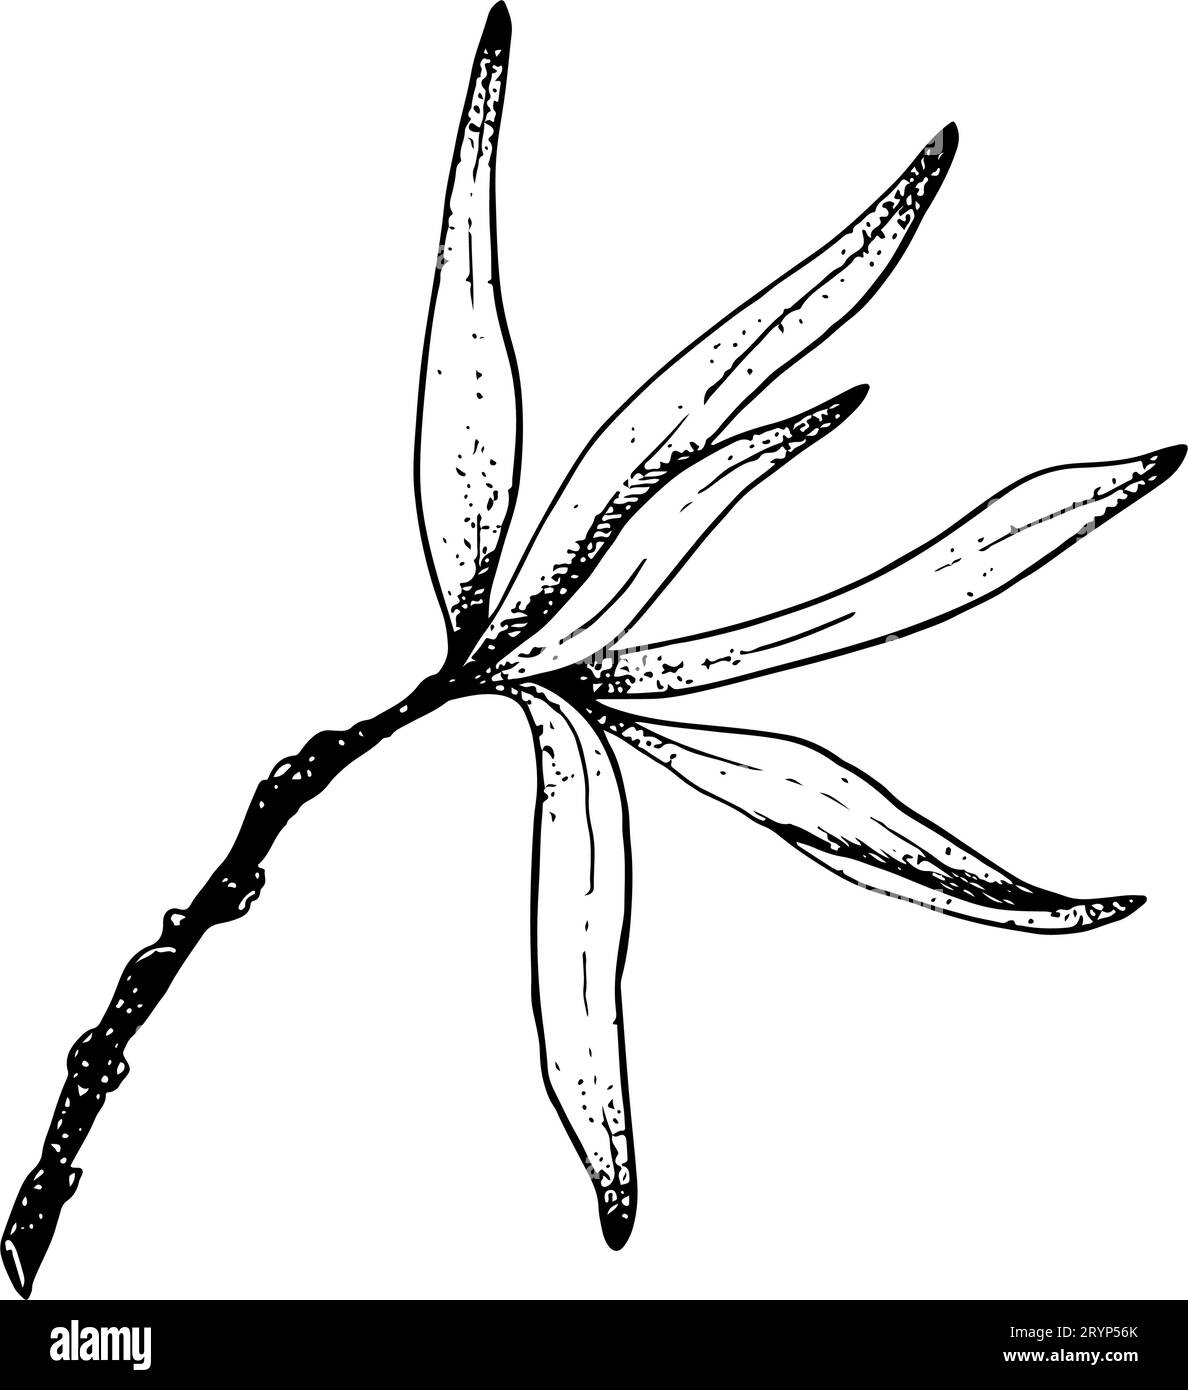 Ramo dell'olivo vettoriale con illustrazione dello schizzo delle foglie. Disegno a inchiostro bianco e nero della pianta di spinotti marini Illustrazione Vettoriale